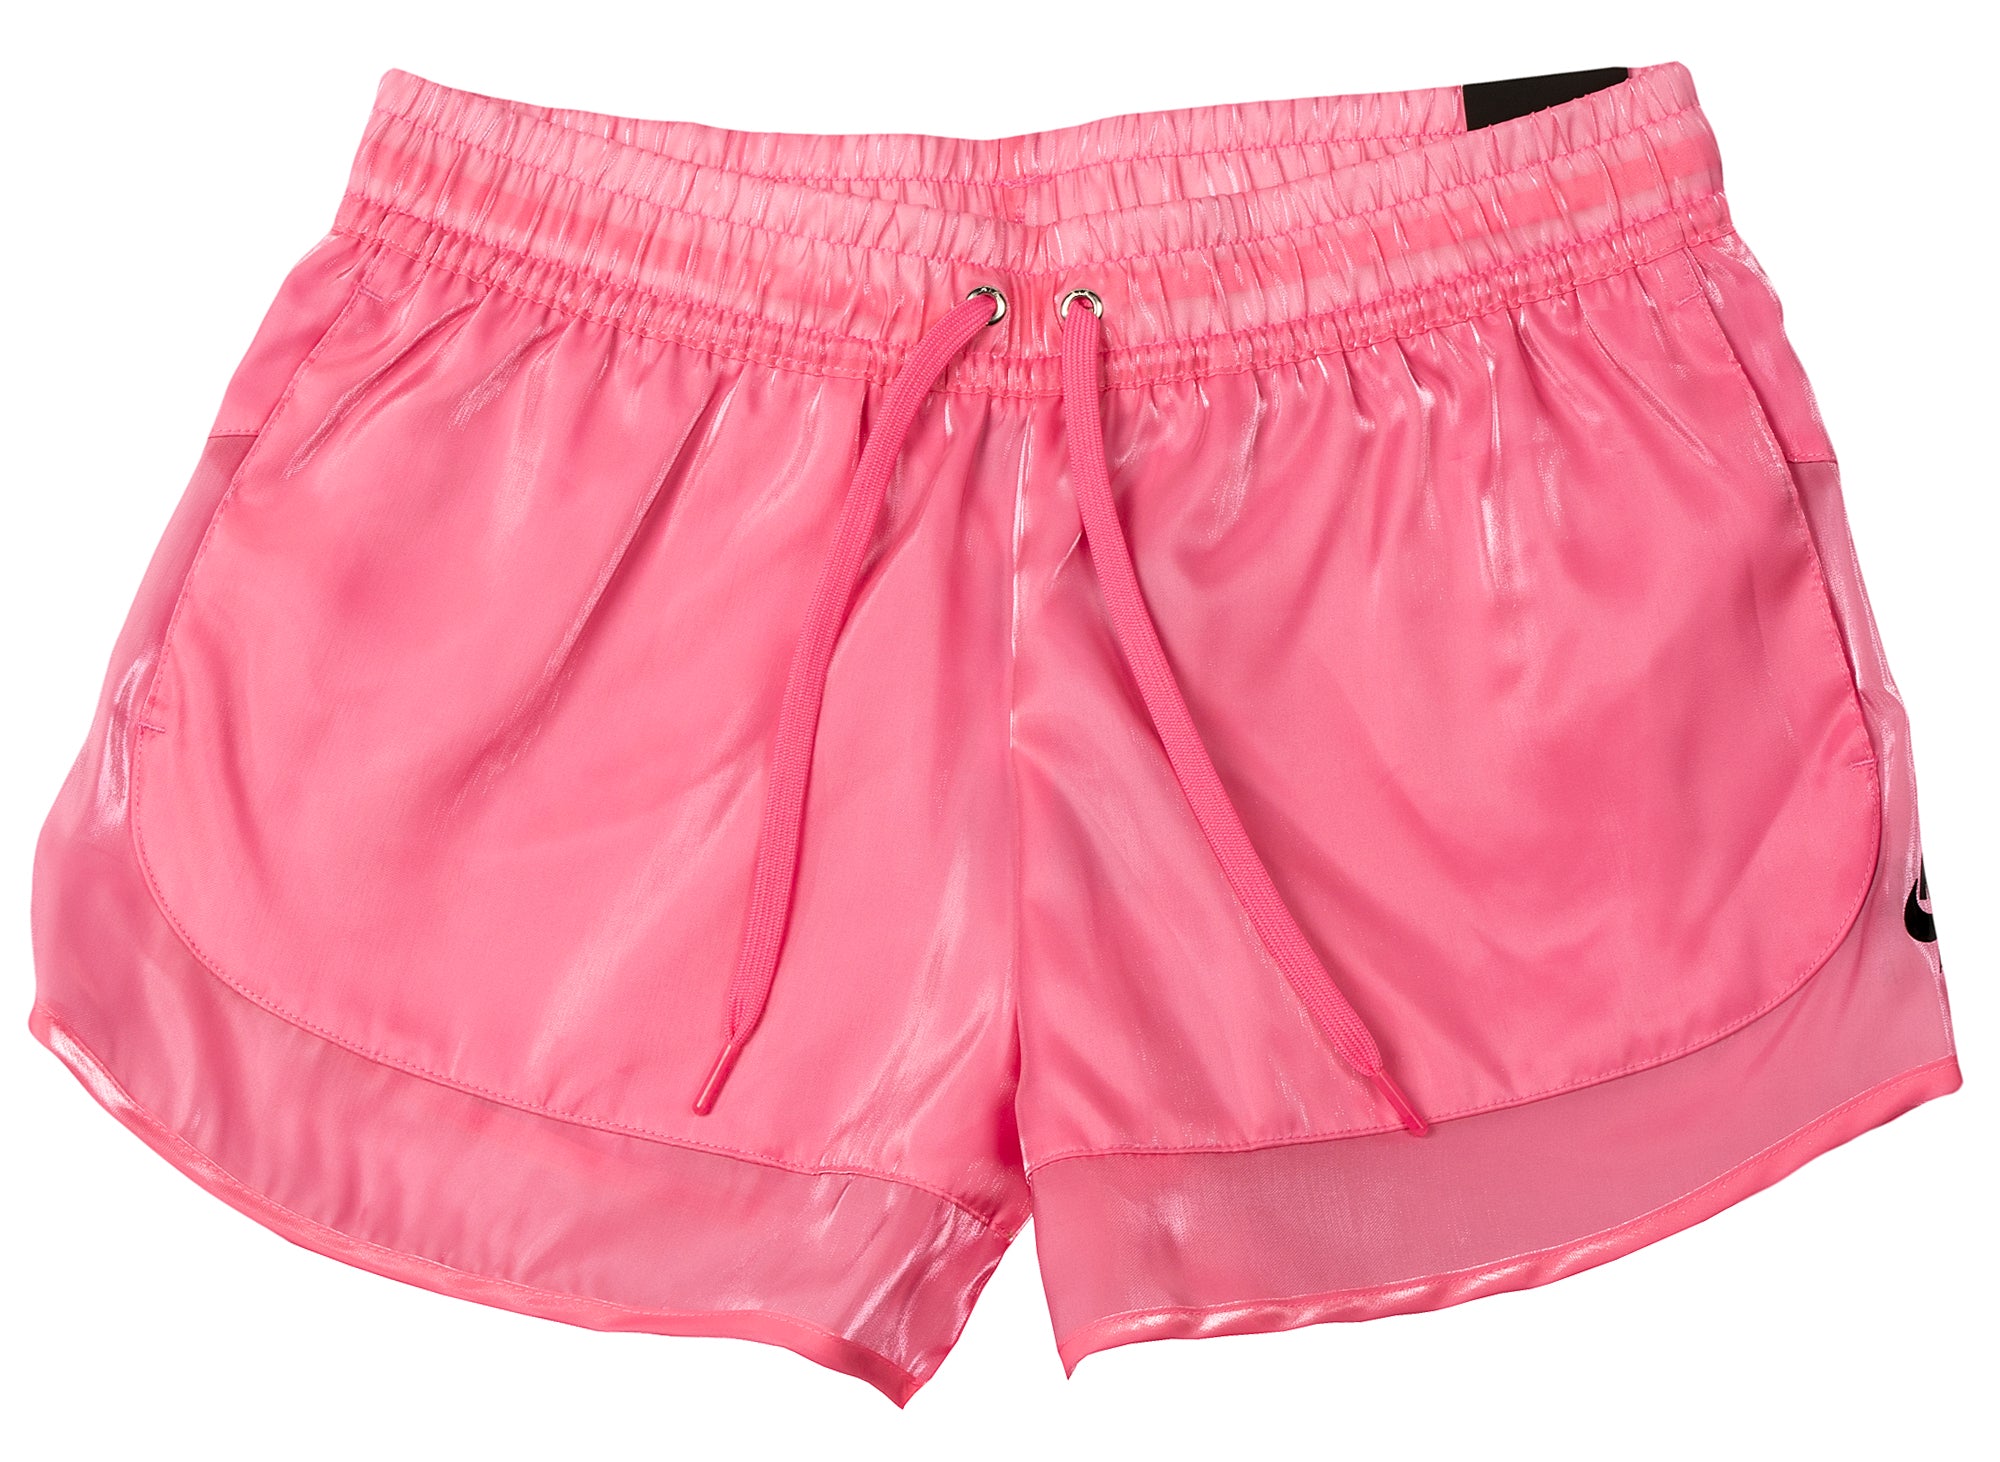 nike air pink shorts